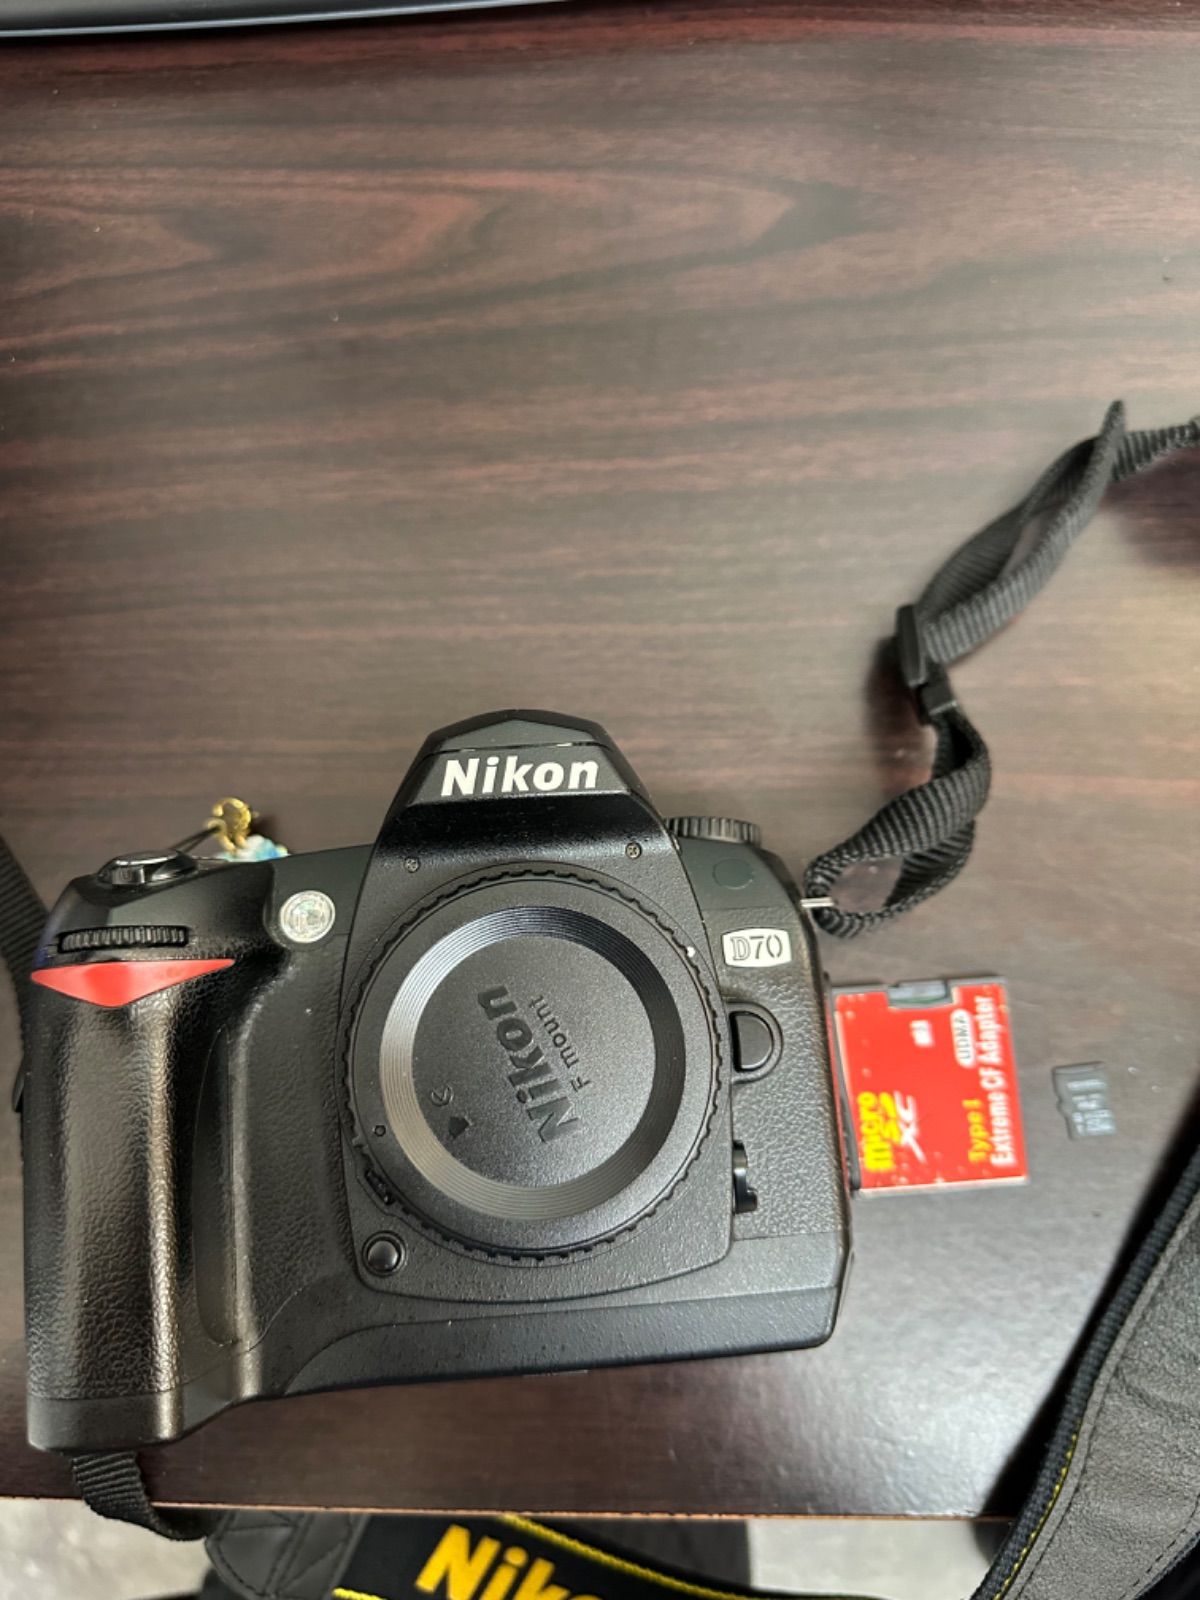 Nikon ニコン D70 本体 8Gカード付属 - たからやま - メルカリ